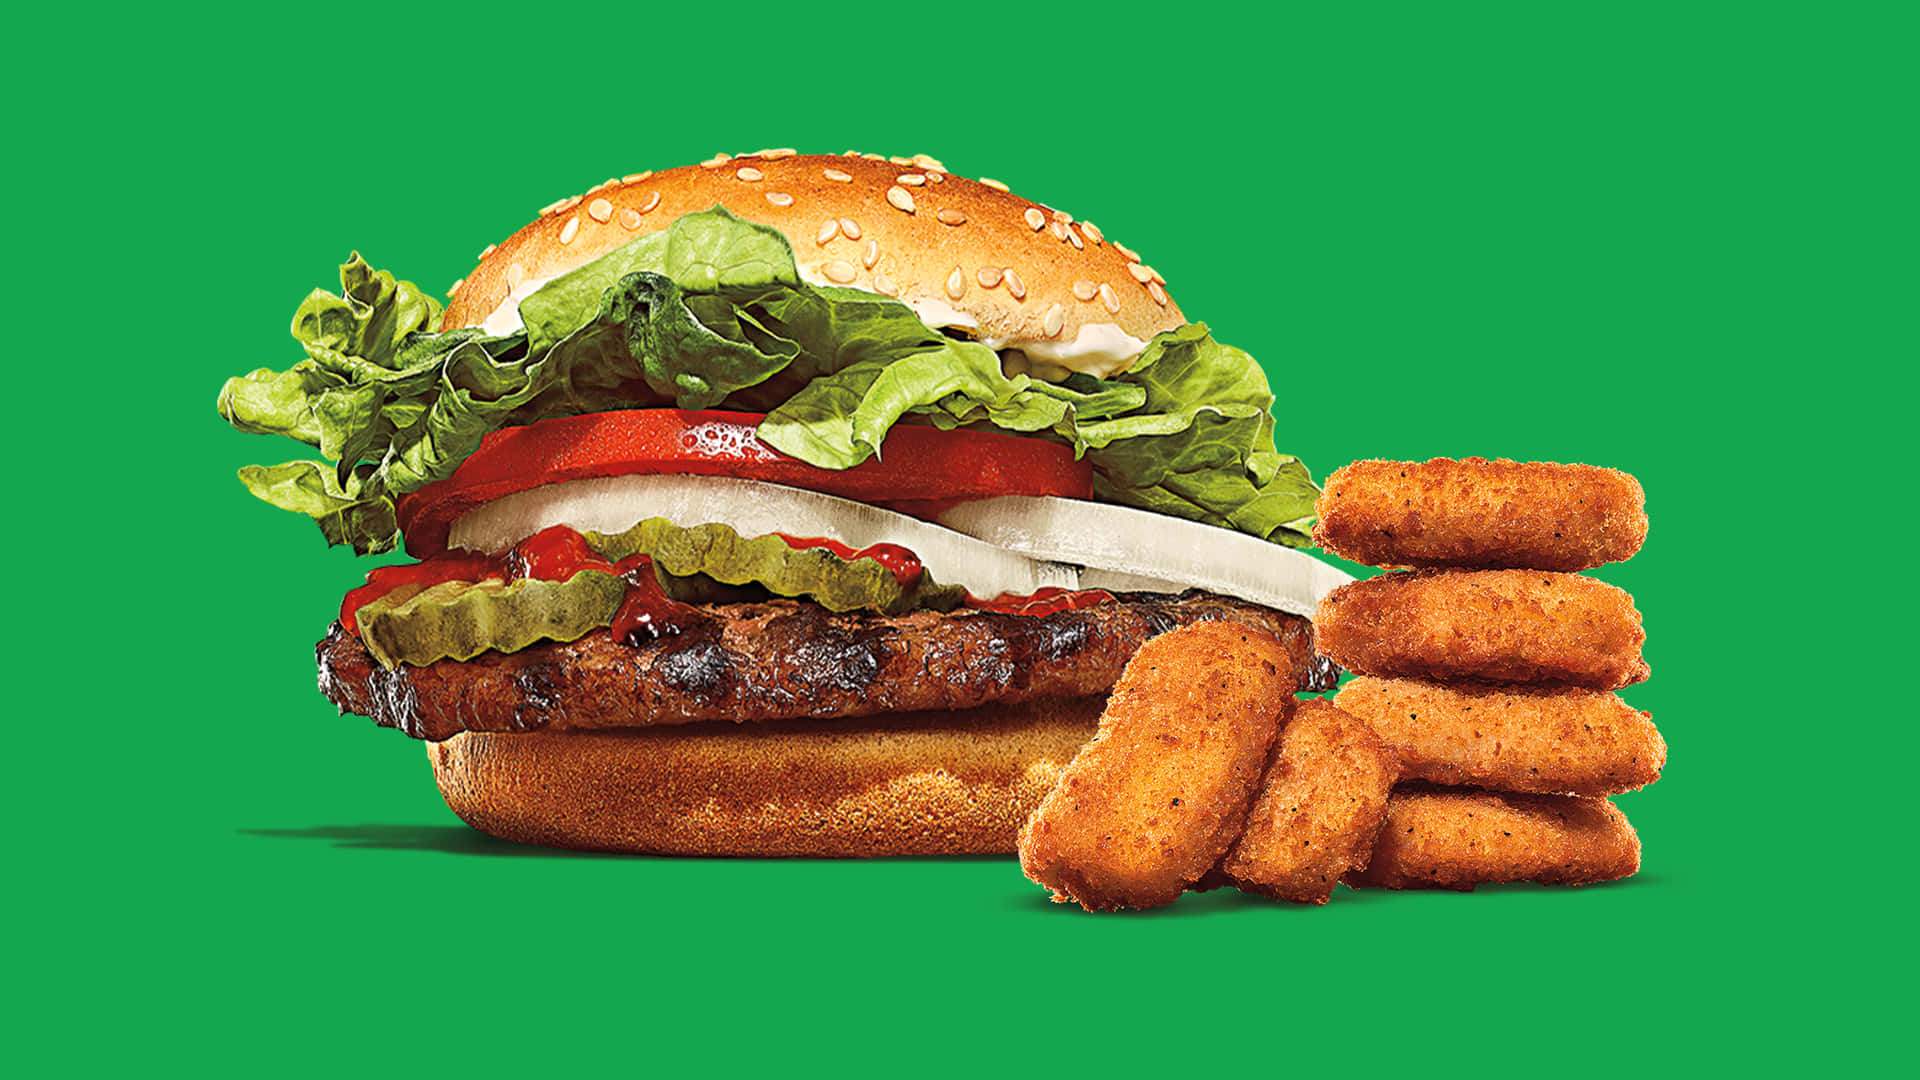 Deliziosihamburger Alla Griglia Fiammanti, Preparati Su Misura Da Burger King.